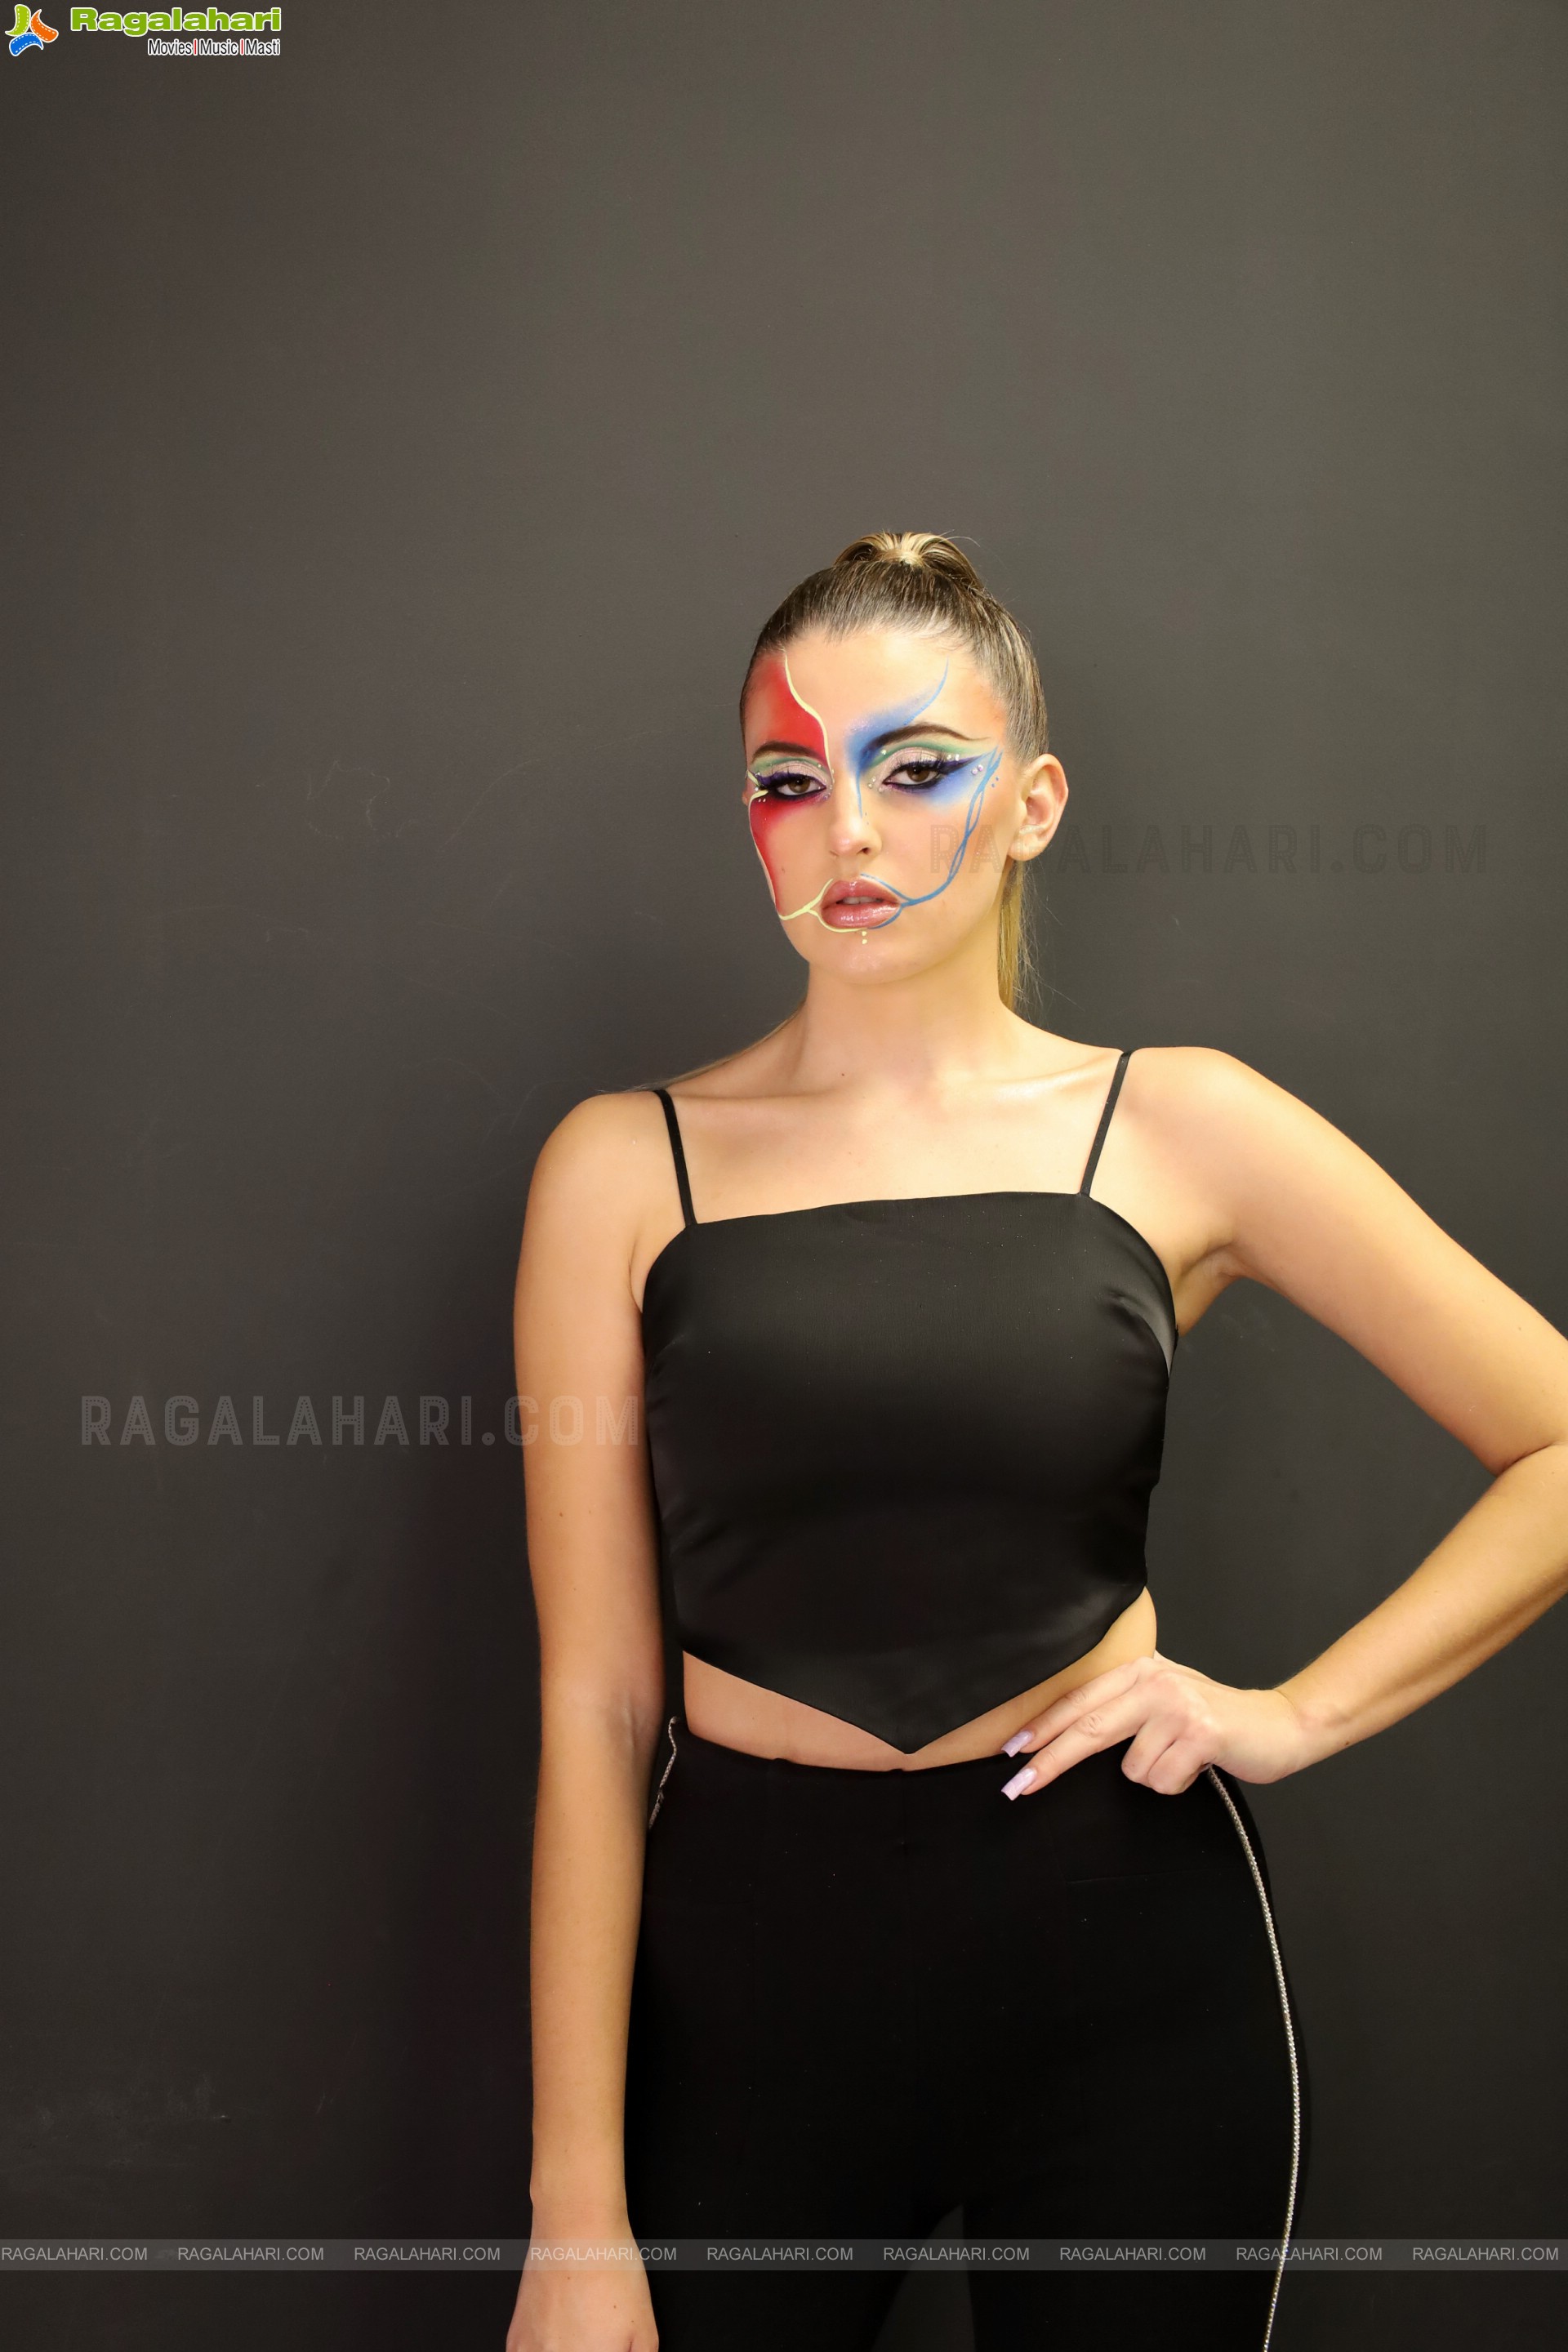 Aliya Baig Academy Of Makeup at Banjara Hills